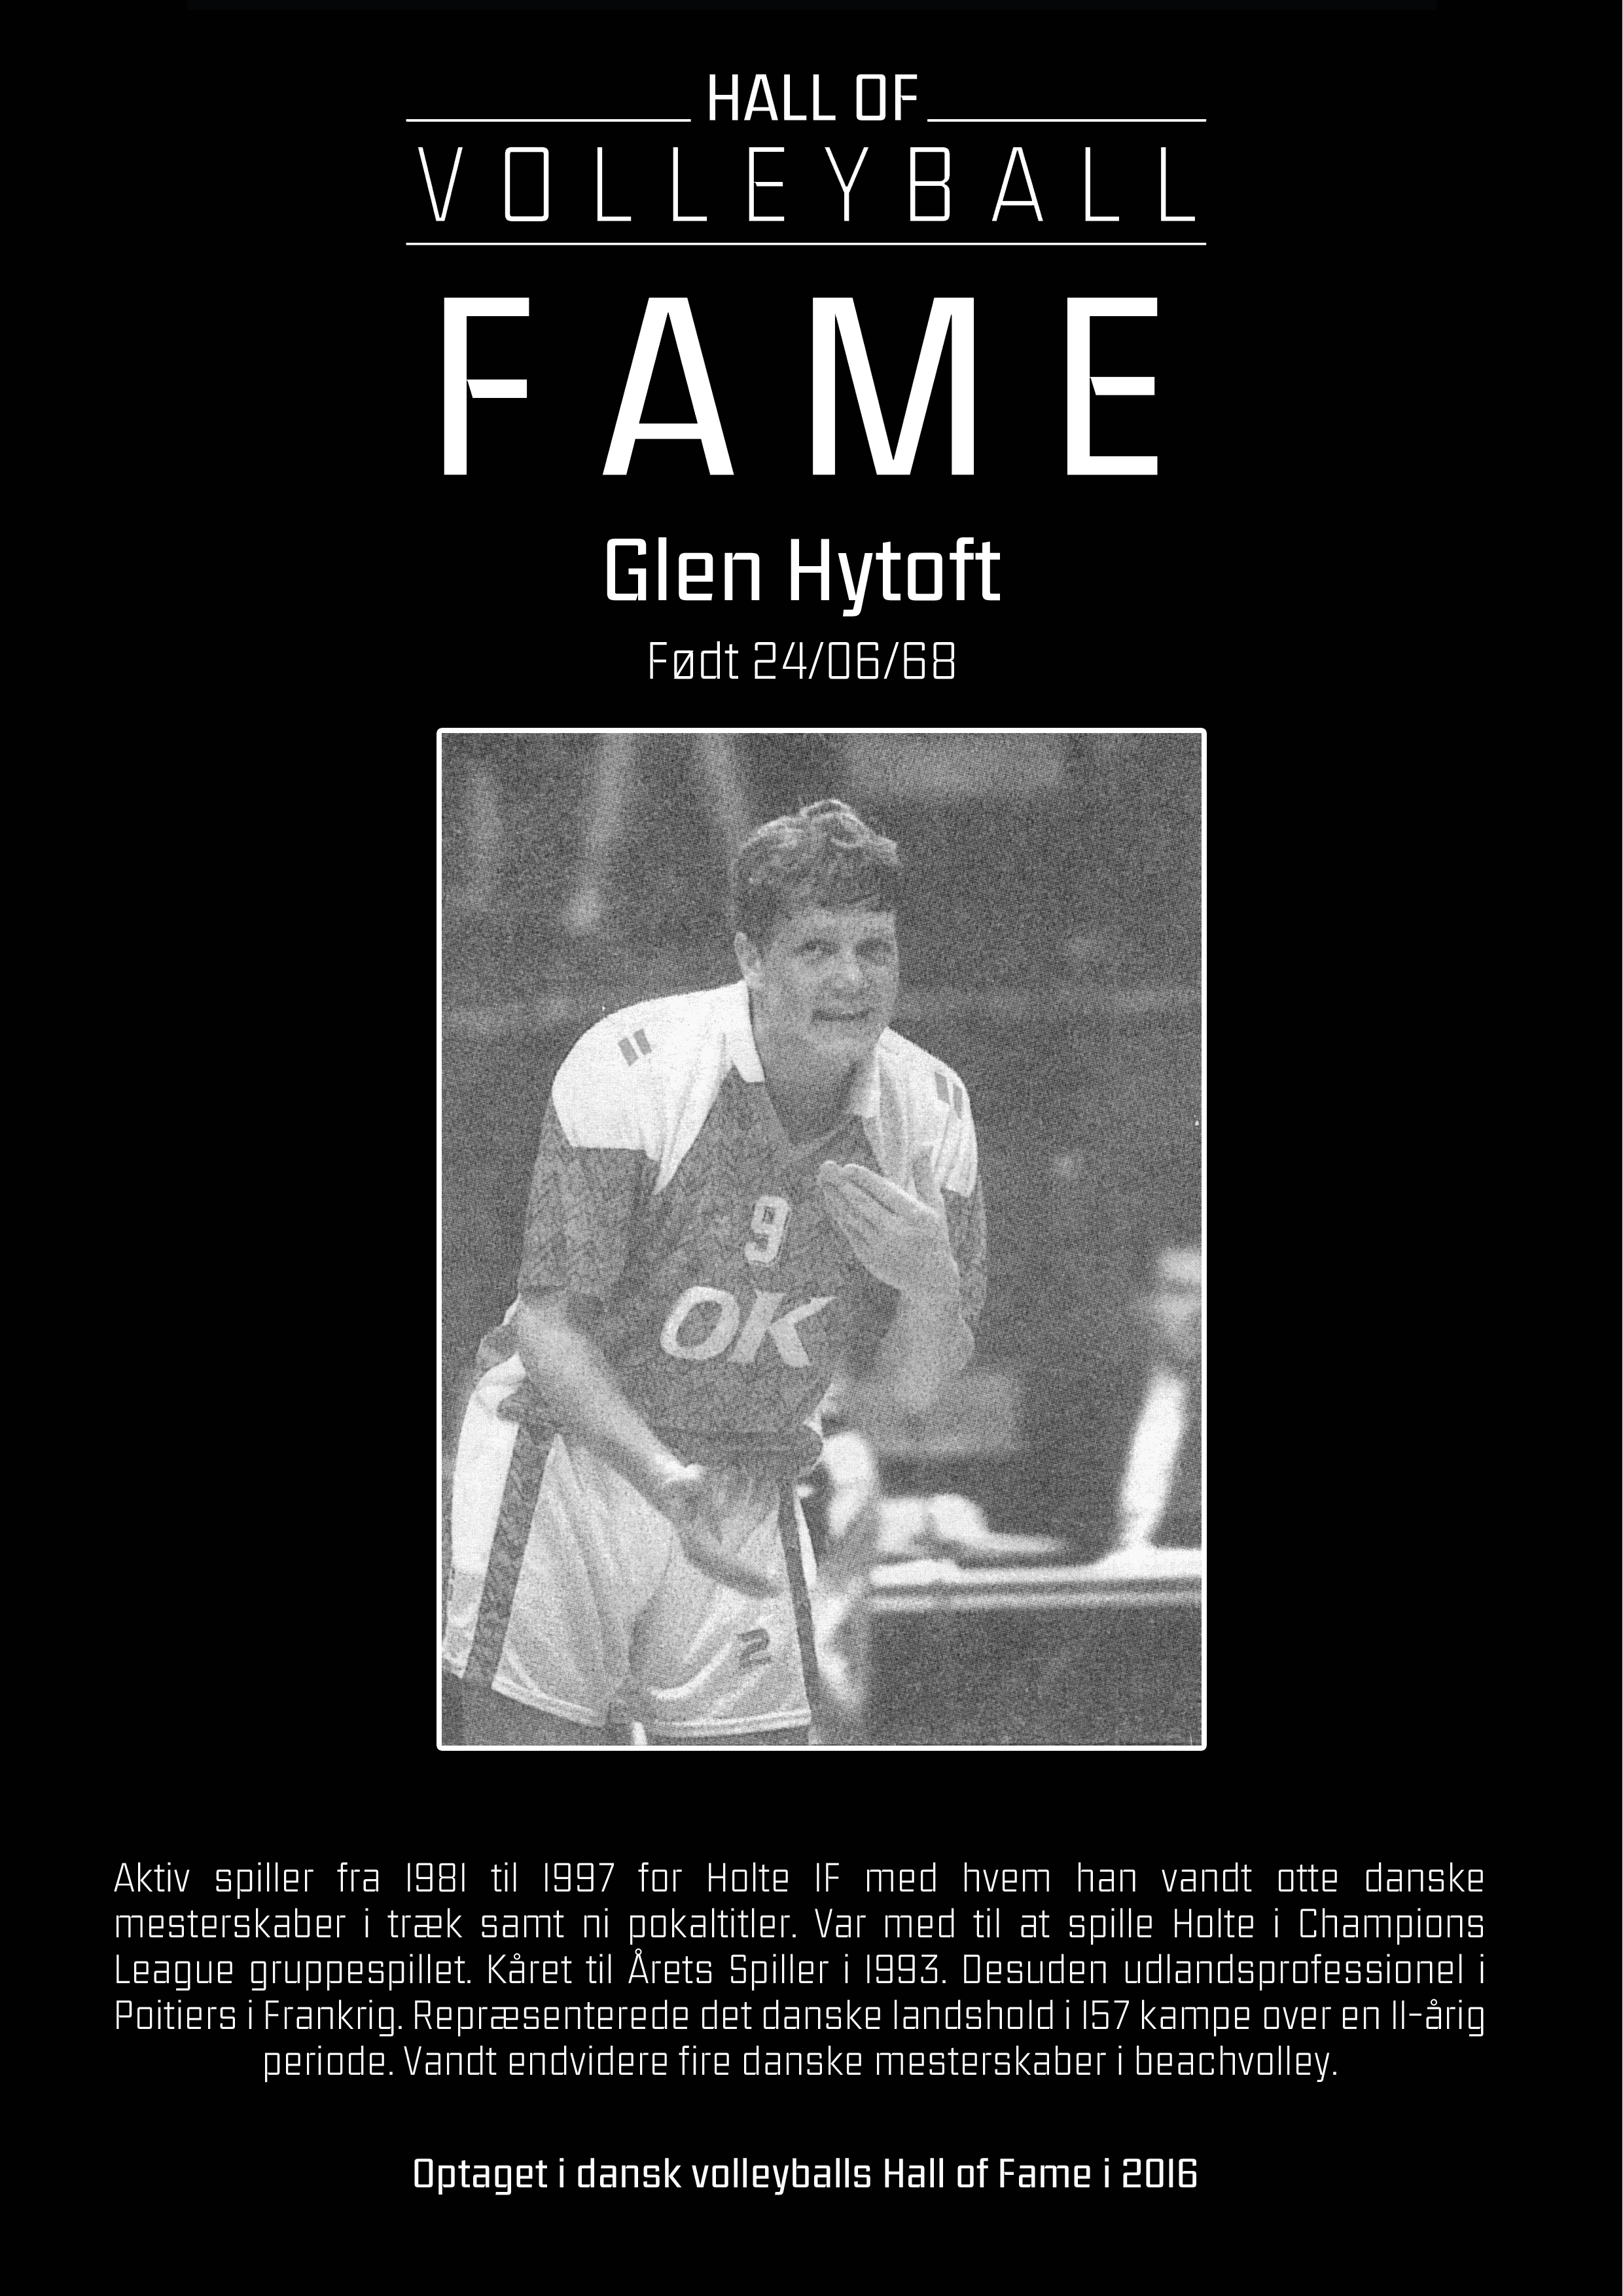 Glen Hytoft